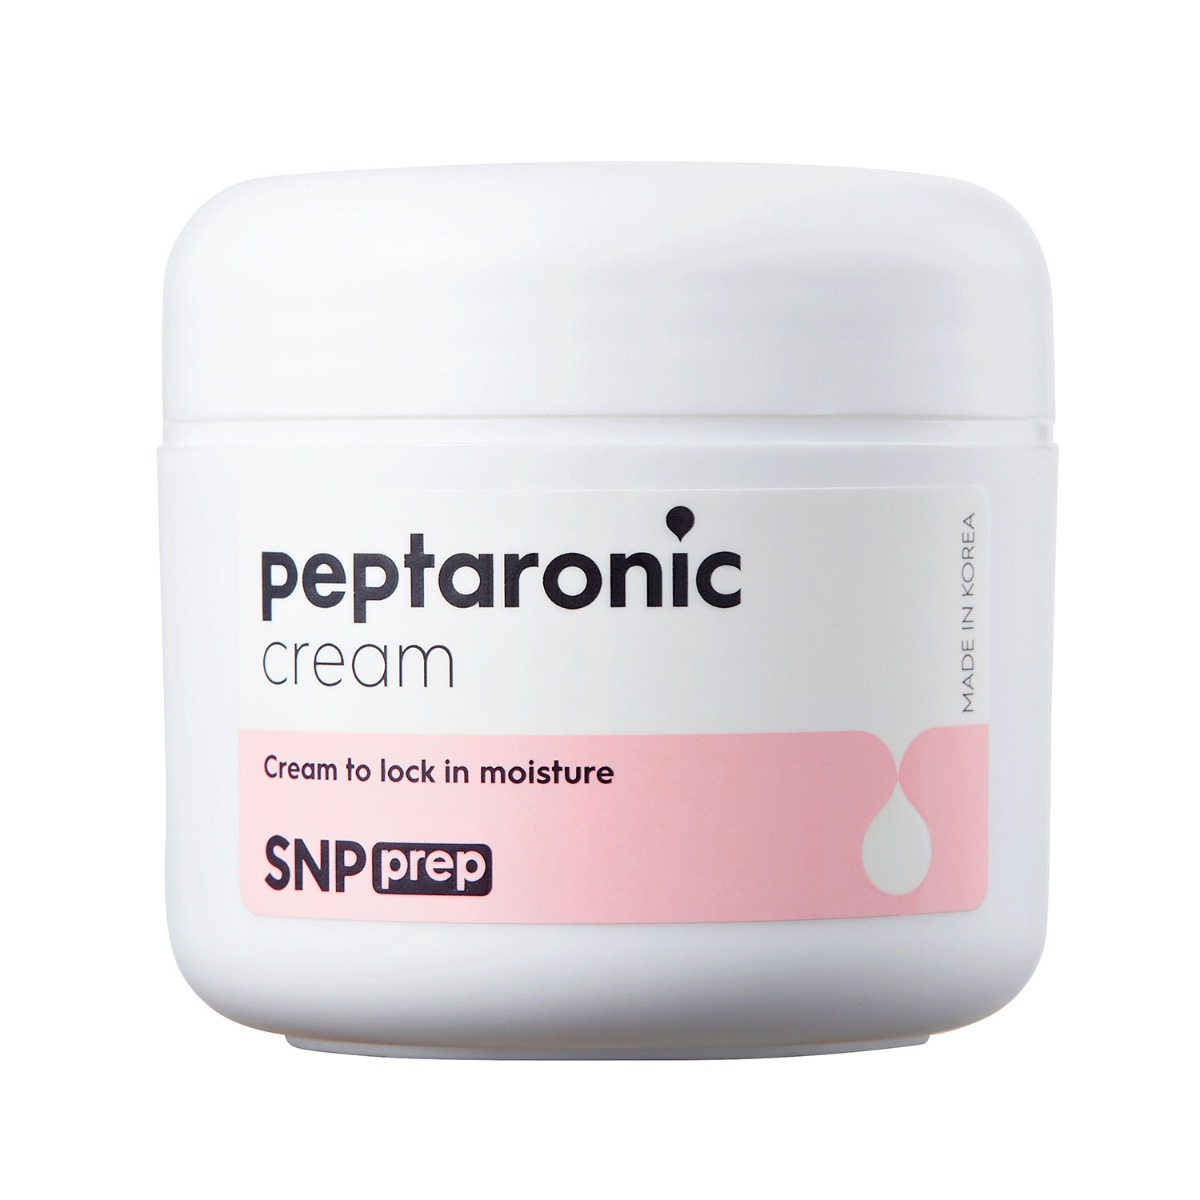 SNP PREP Peptaronic Cream, 55ml